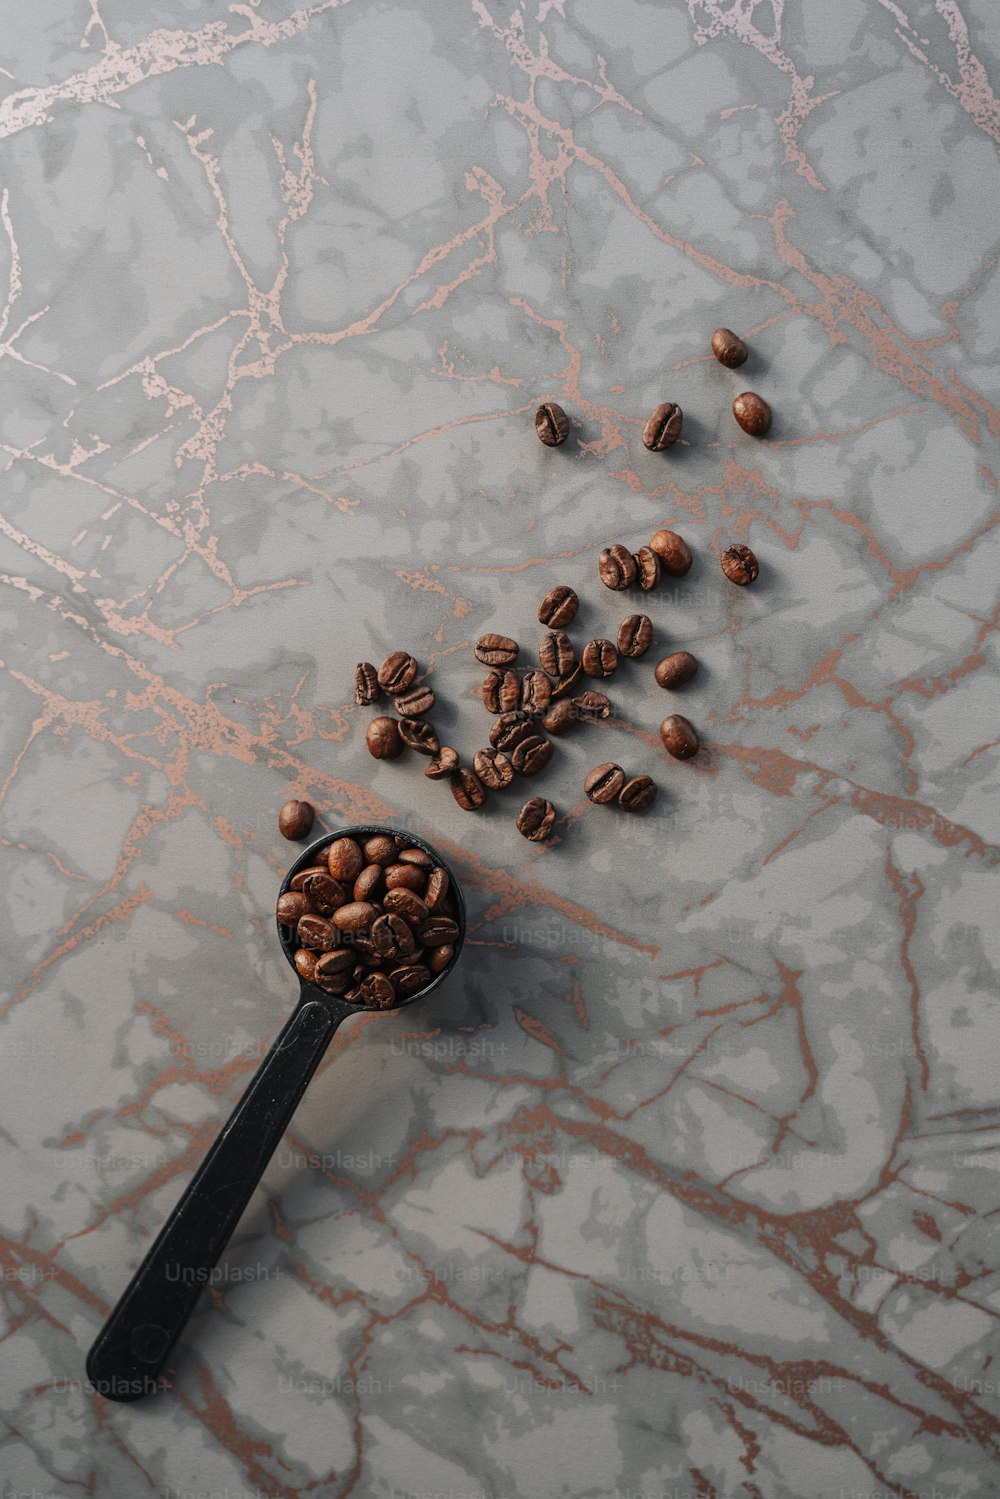 une cuillère pleine de grains de café sur une surface en marbre